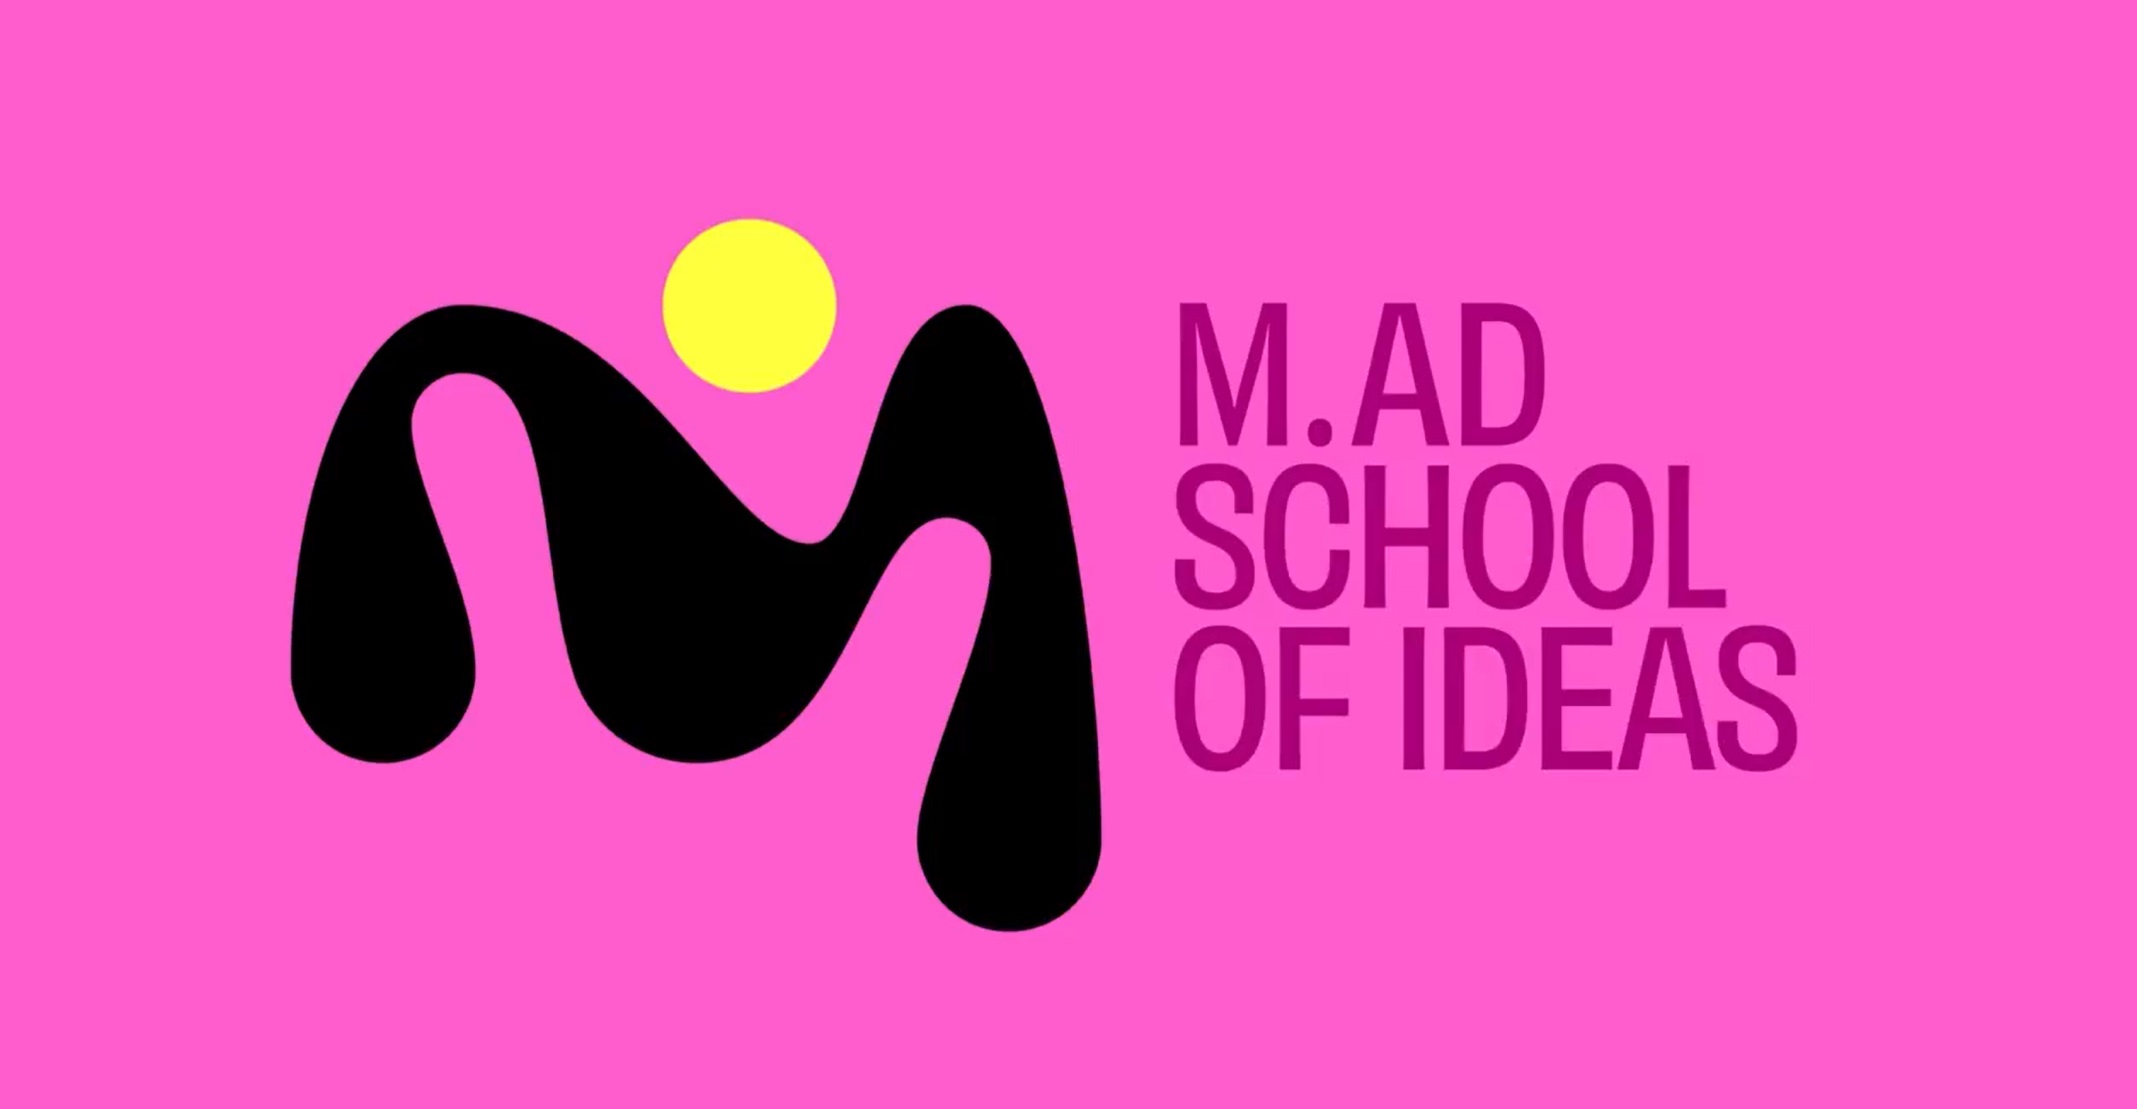 miami, ad school of ideas, programapublicidad